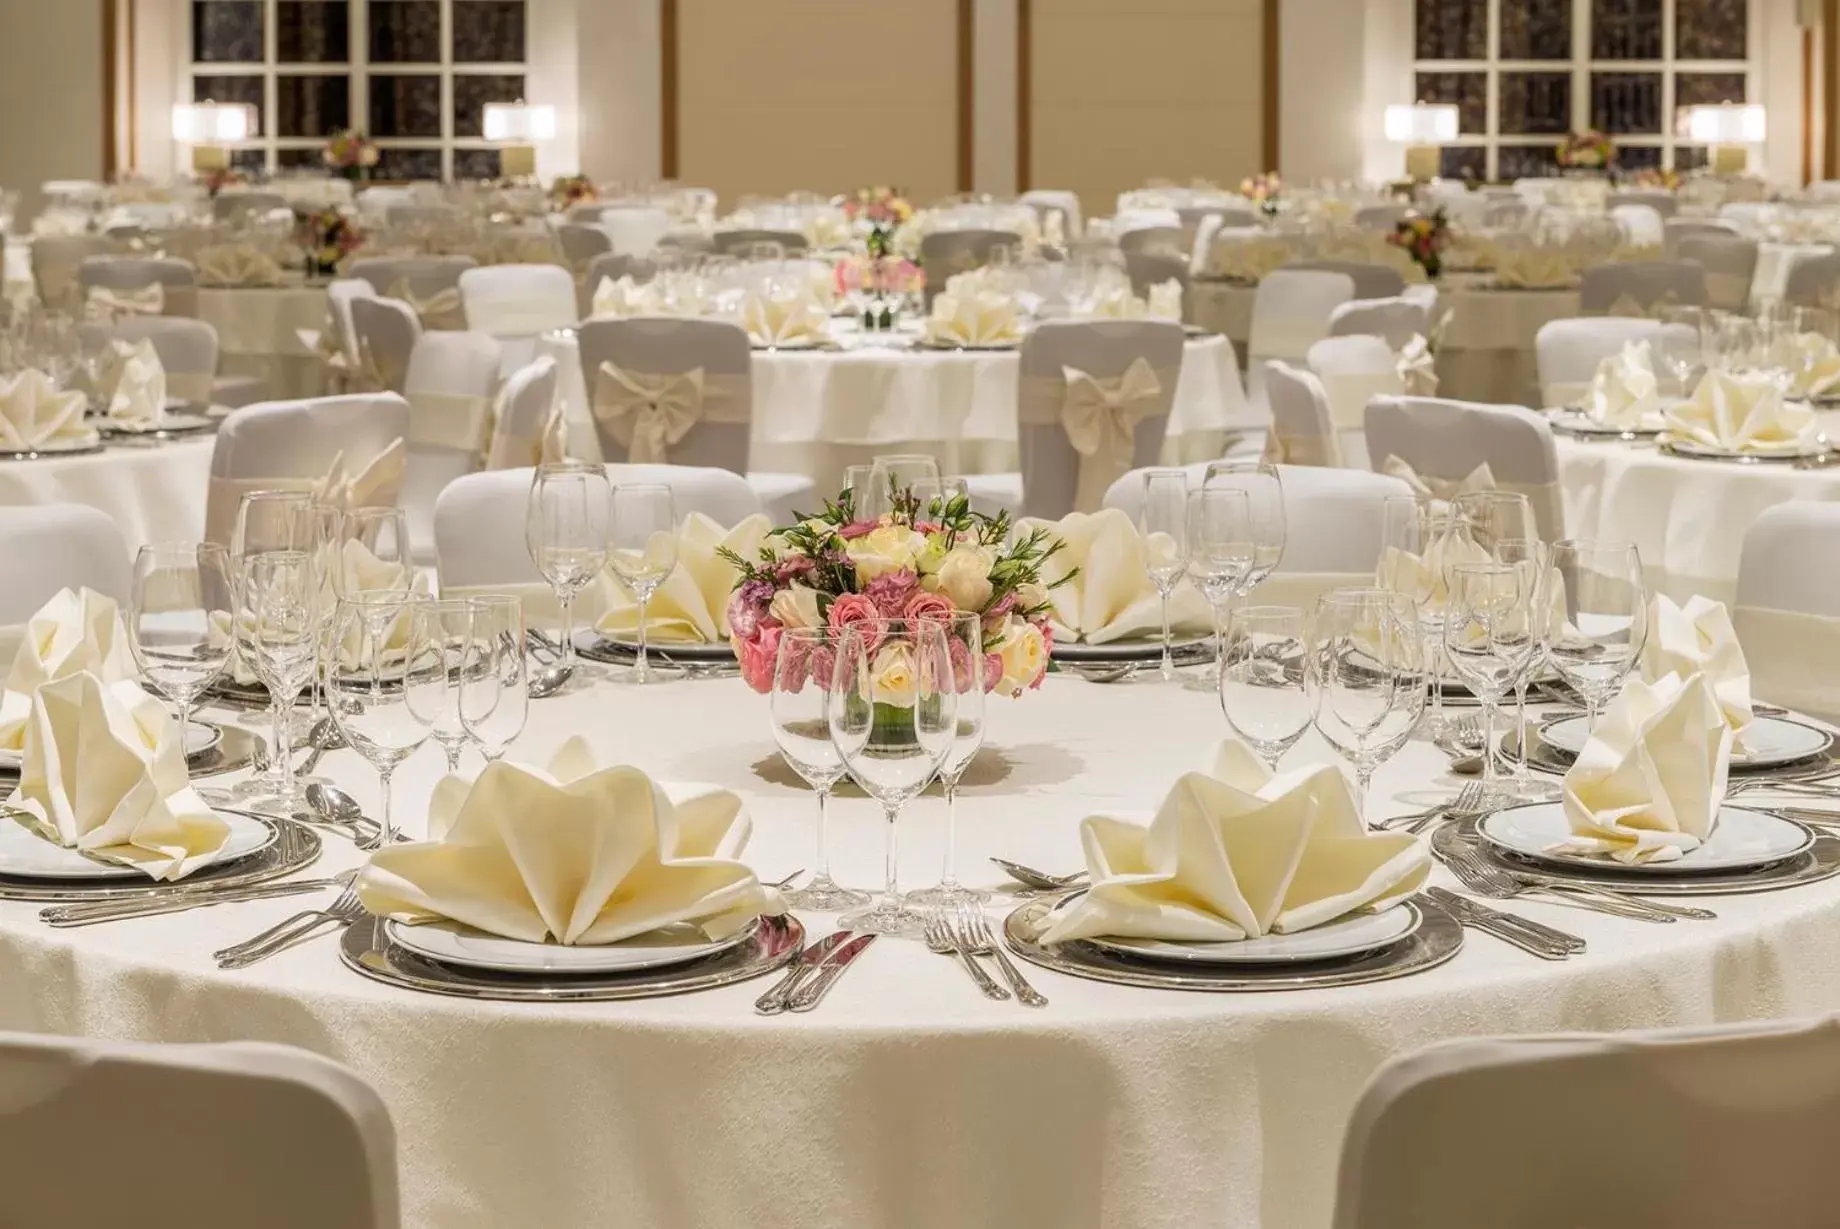 Banquet/Function facilities, Banquet Facilities in Al Habtoor Polo Resort